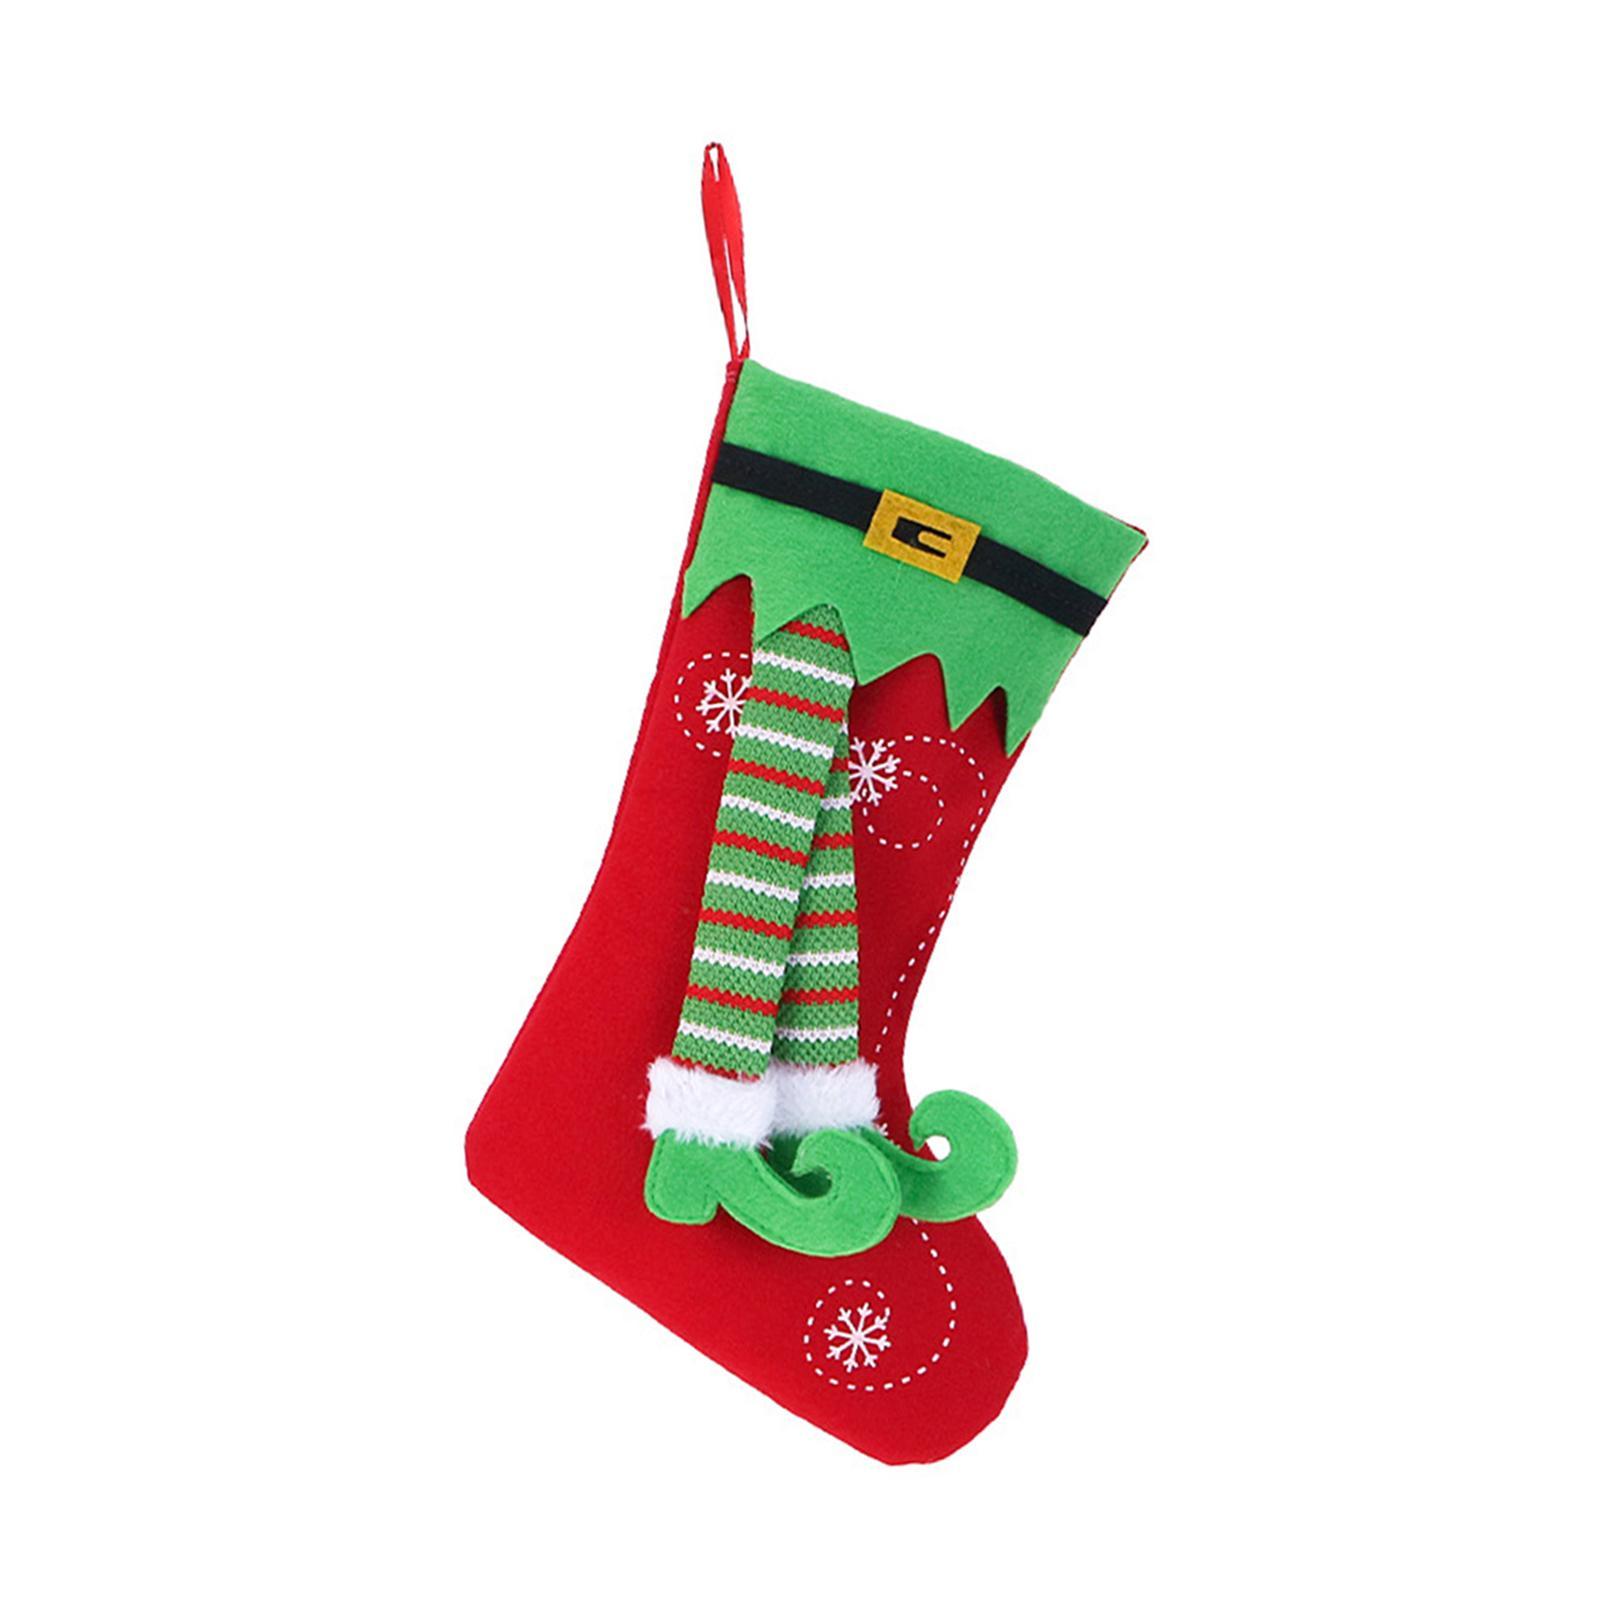 Thiết kế decorate christmas stockings độc đáo cho mùa Giáng sinh